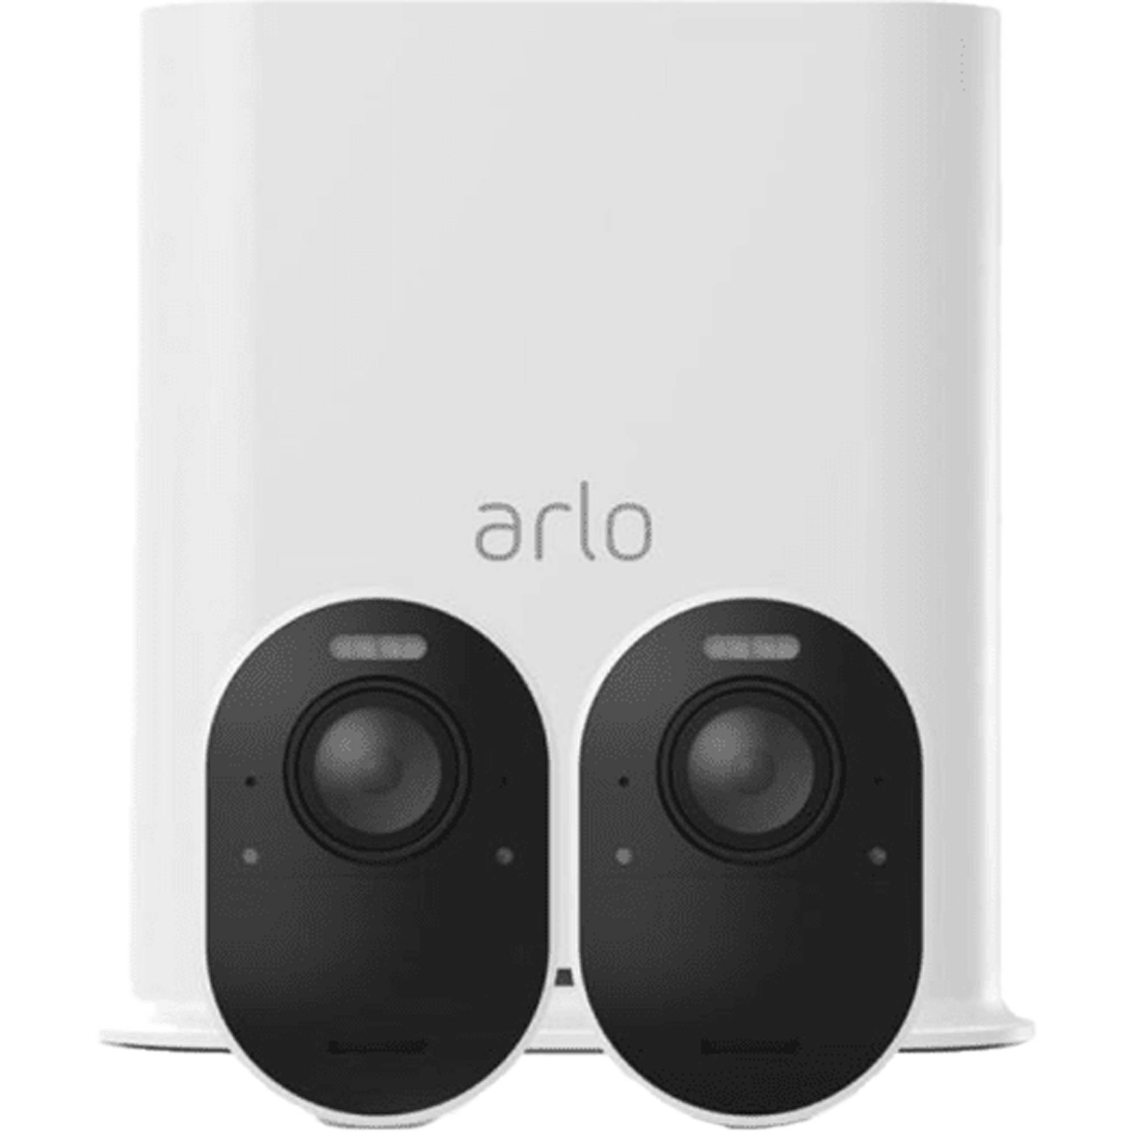 arlo 4k release date